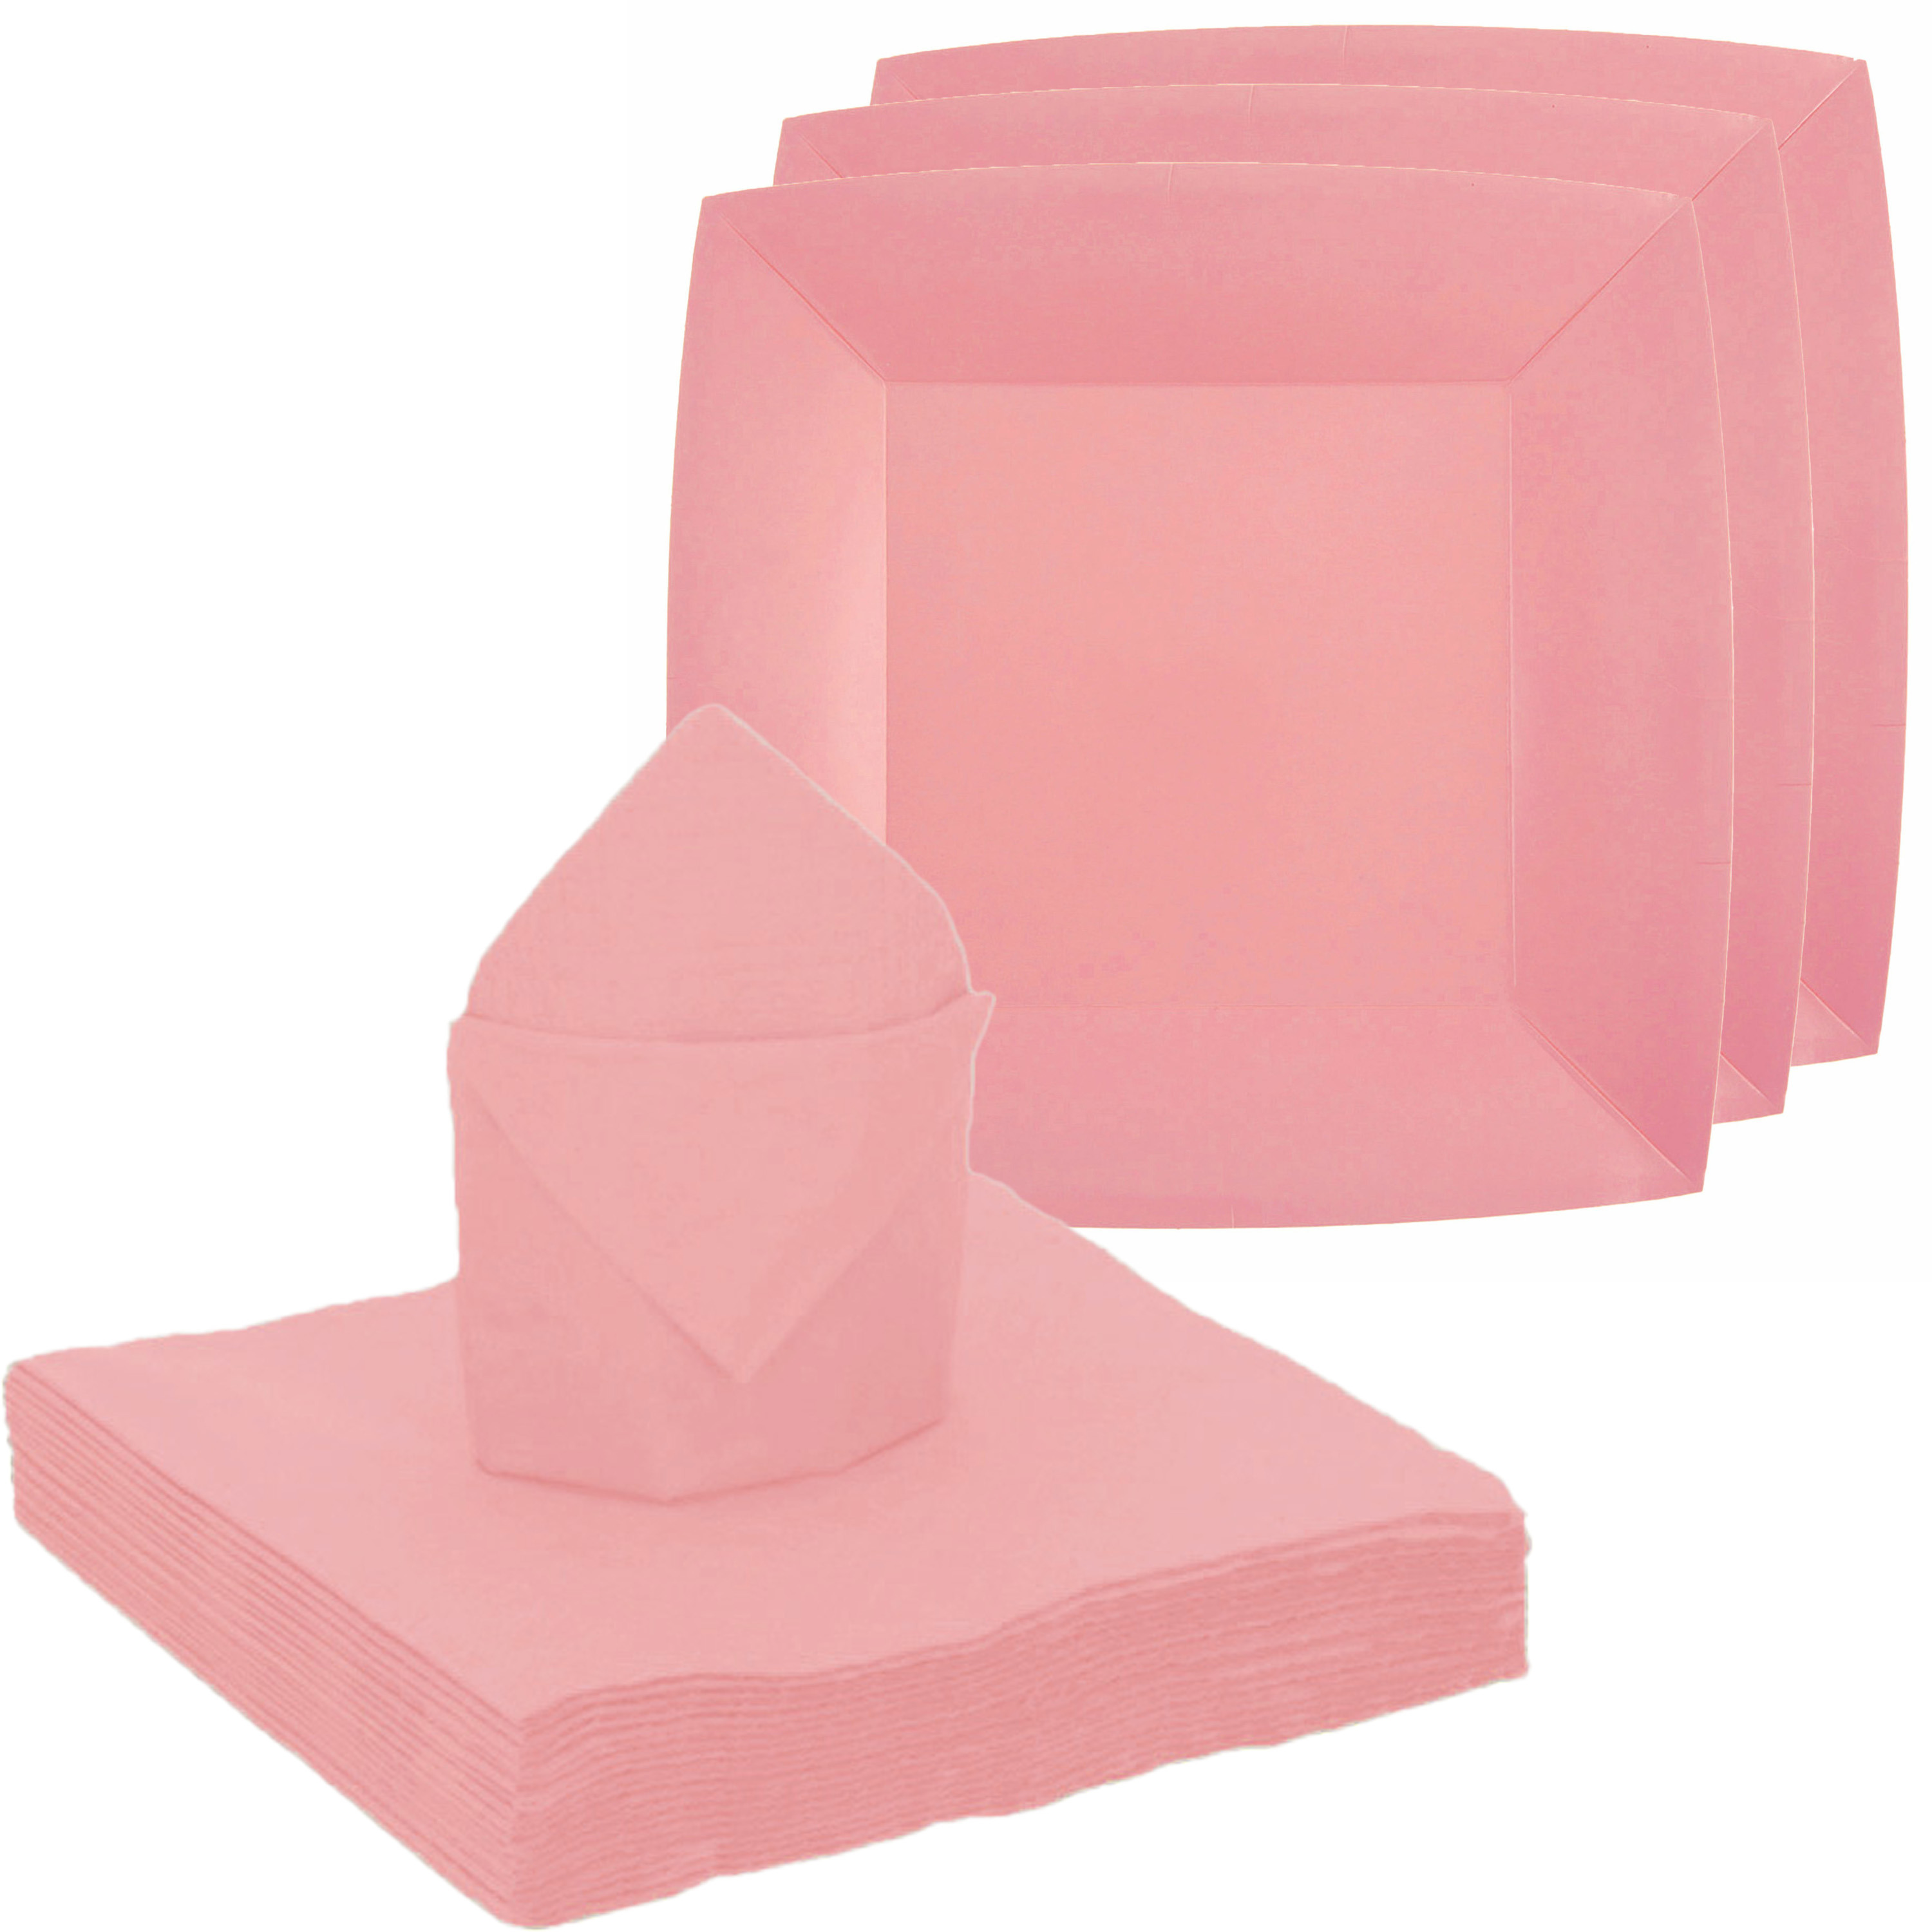 Feest-verjaardag servies set 10x gebaksbordjes-25x servetten roze karton